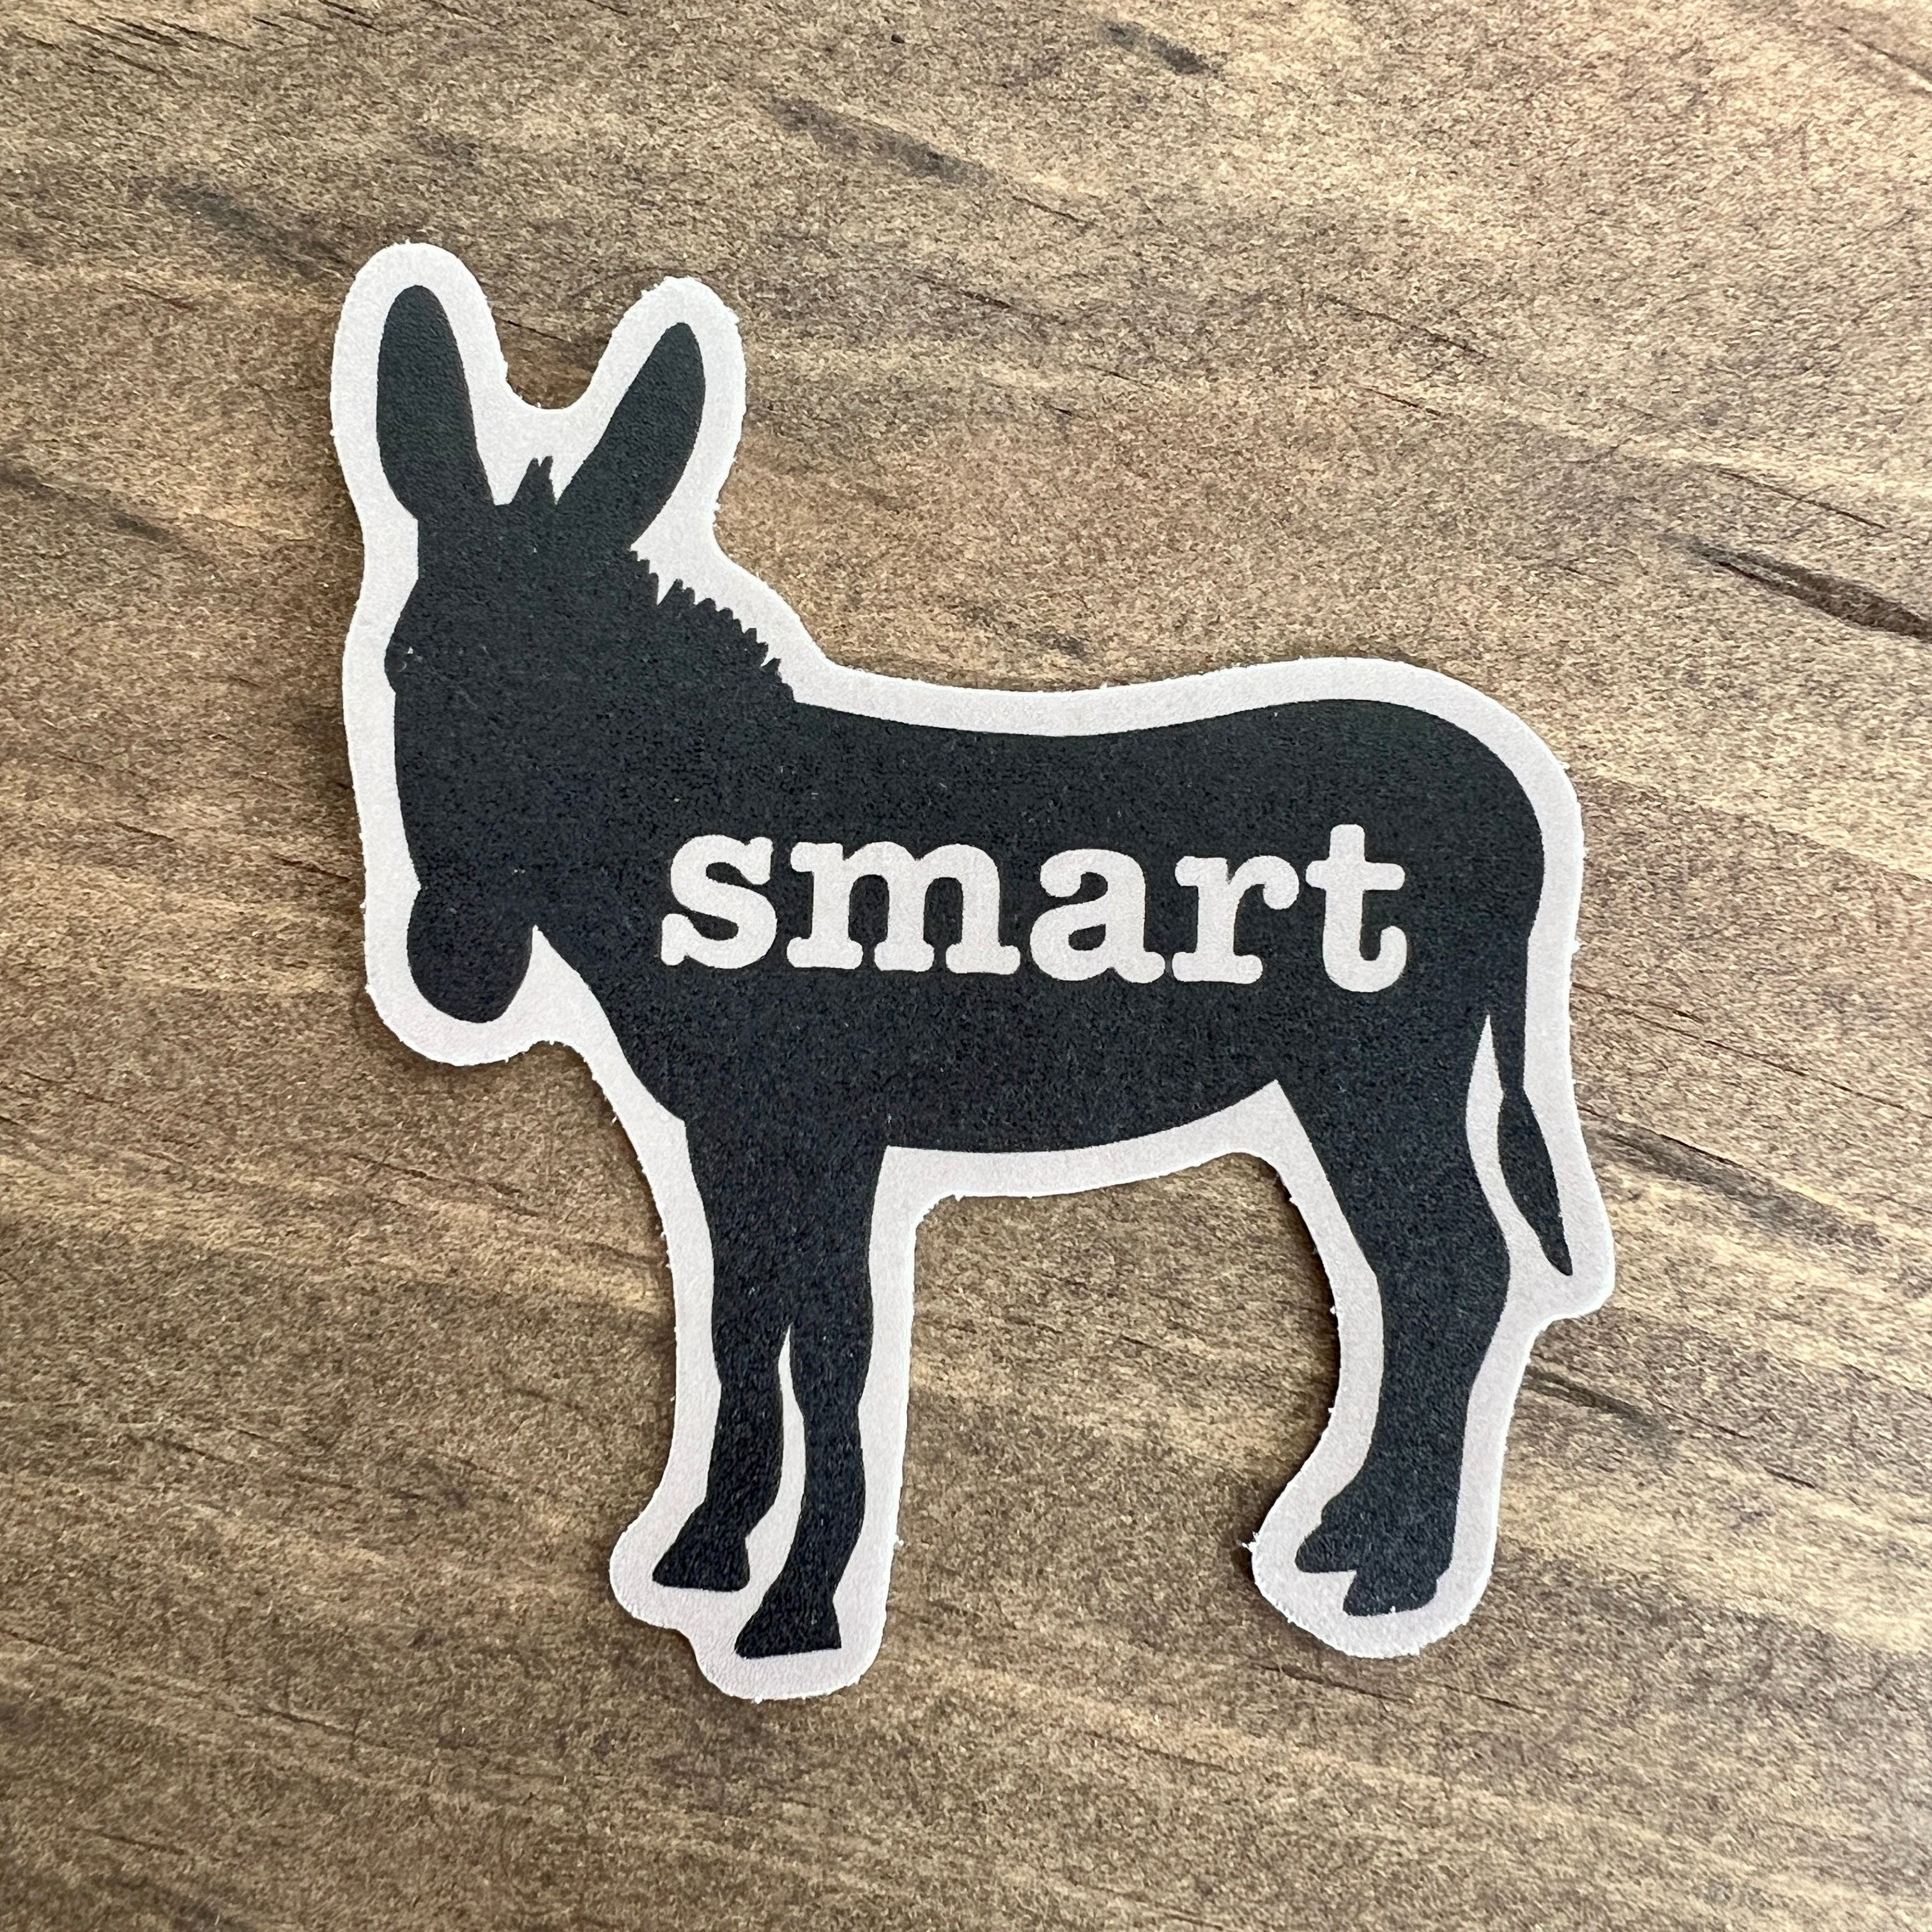 Smart Ass Sticker Decal-Sticker-208 Tees Wholesale, Idaho